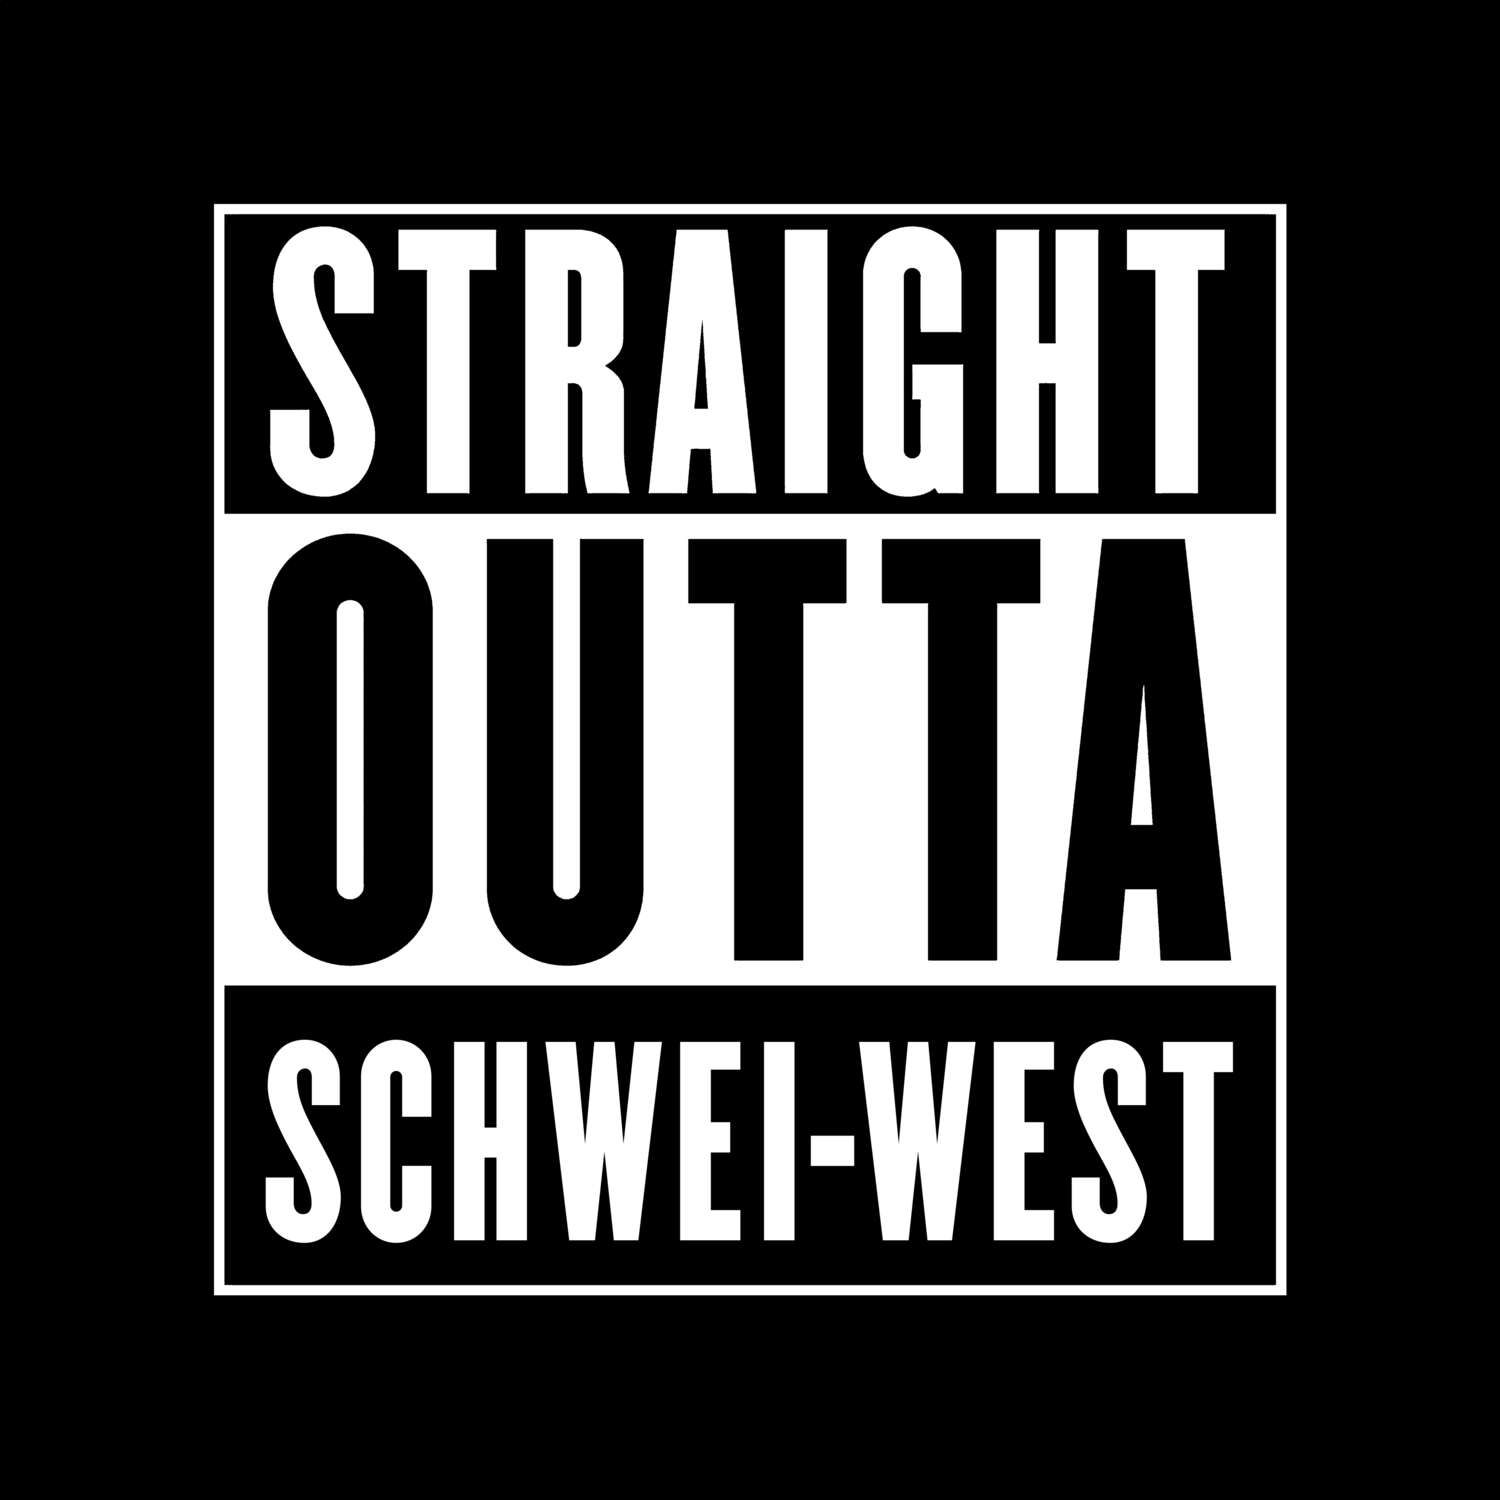 Schwei-West T-Shirt »Straight Outta«